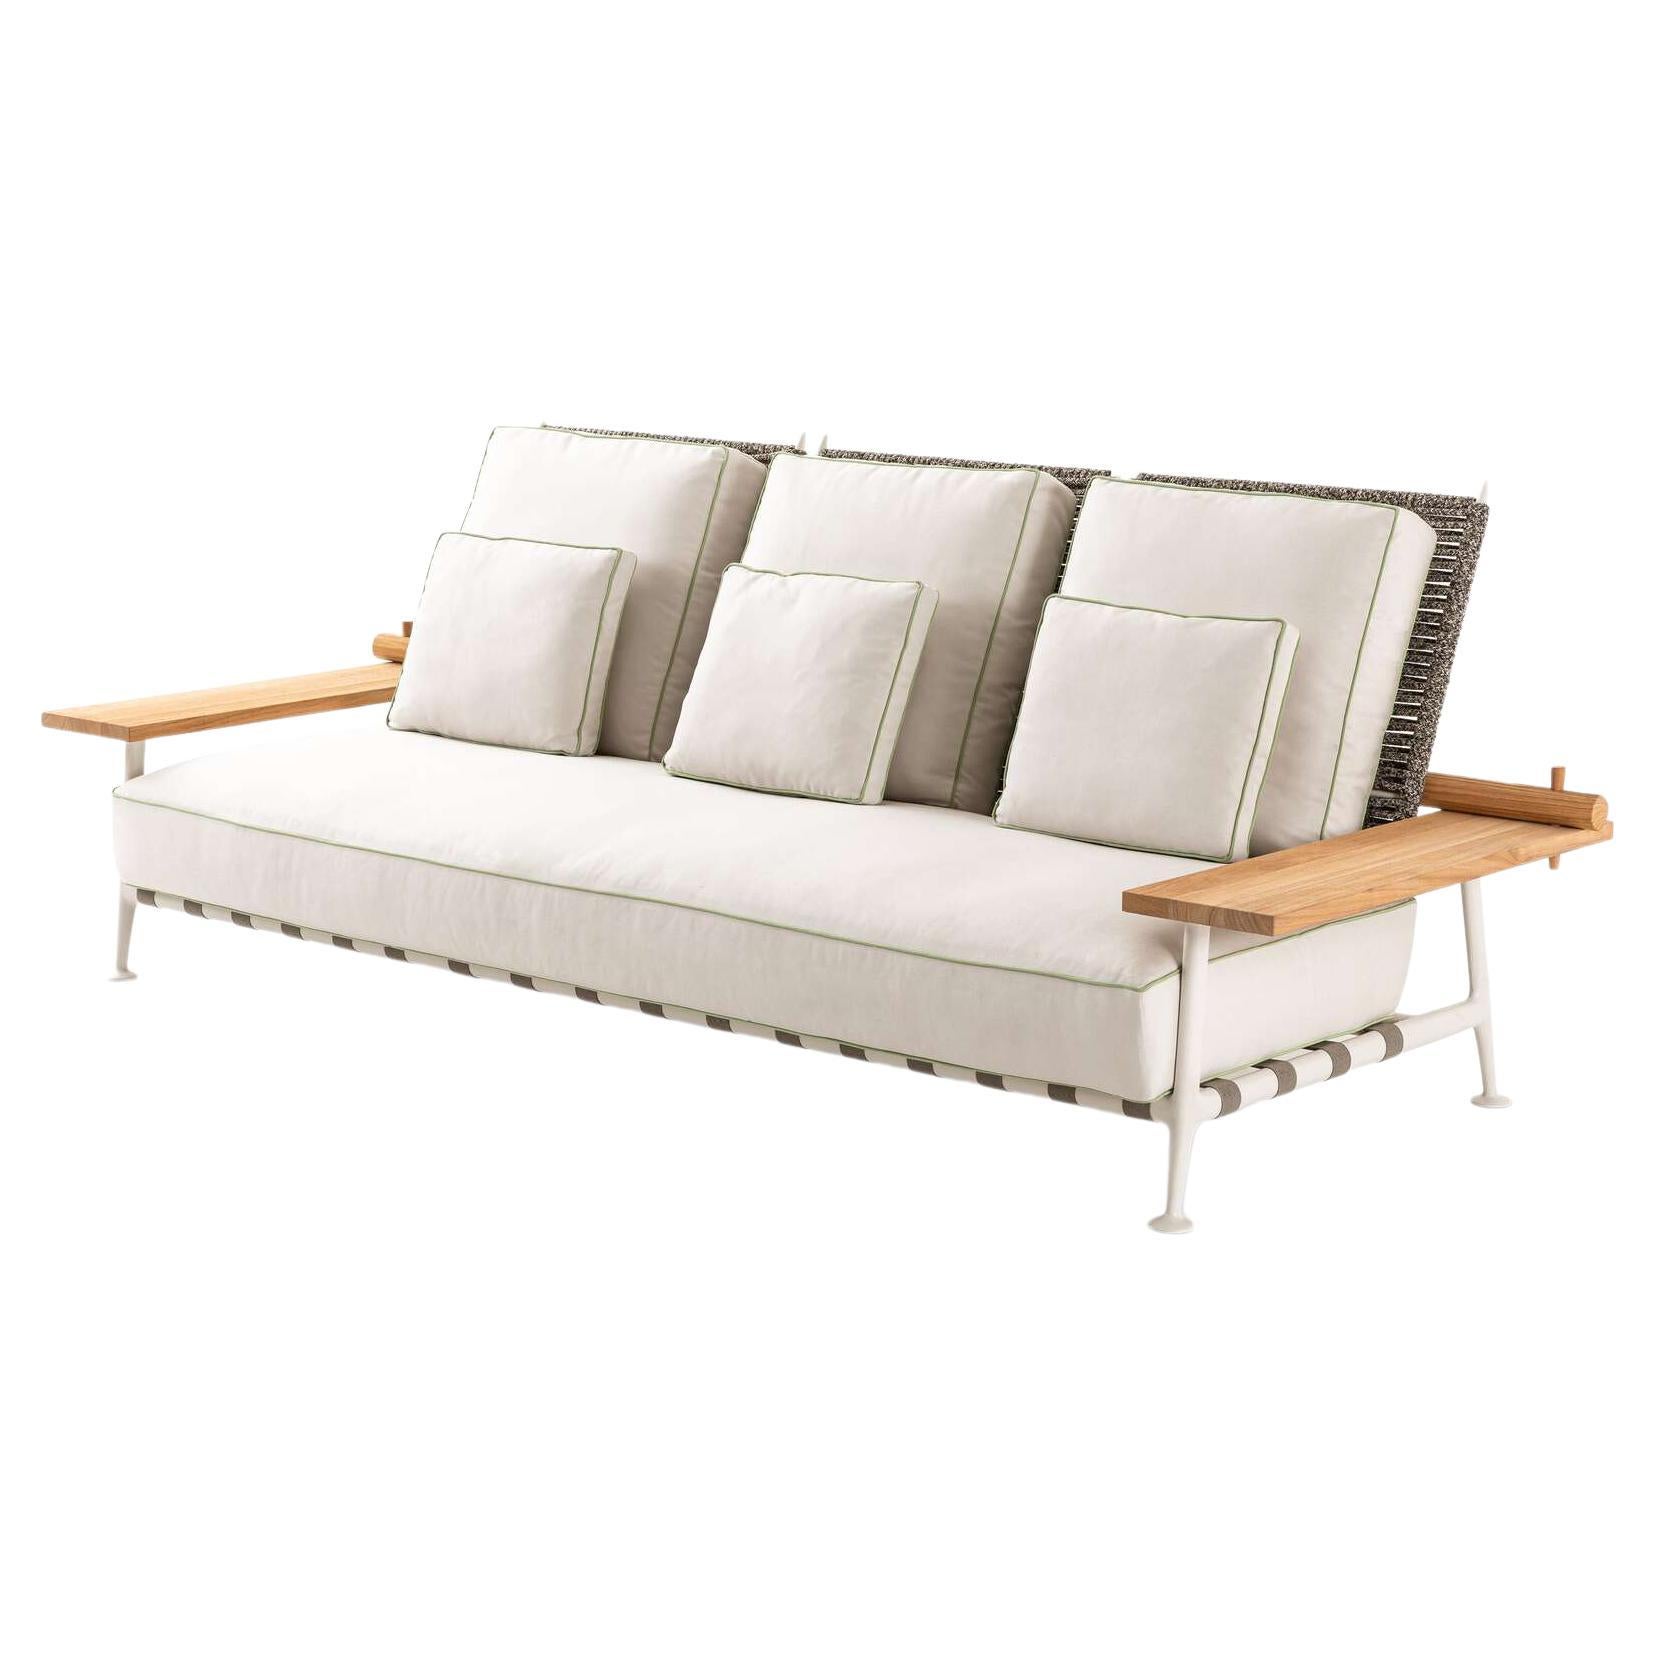 Le prix indiqué s'applique au canapé tel qu'il apparaît sur la première photo. Les prix varient en fonction de la taille/du modèle et du matériau du canapé.

Canapé d'extérieur conçu par Philippe Starck en 2020. Fabriqué par Cassina en Italie.